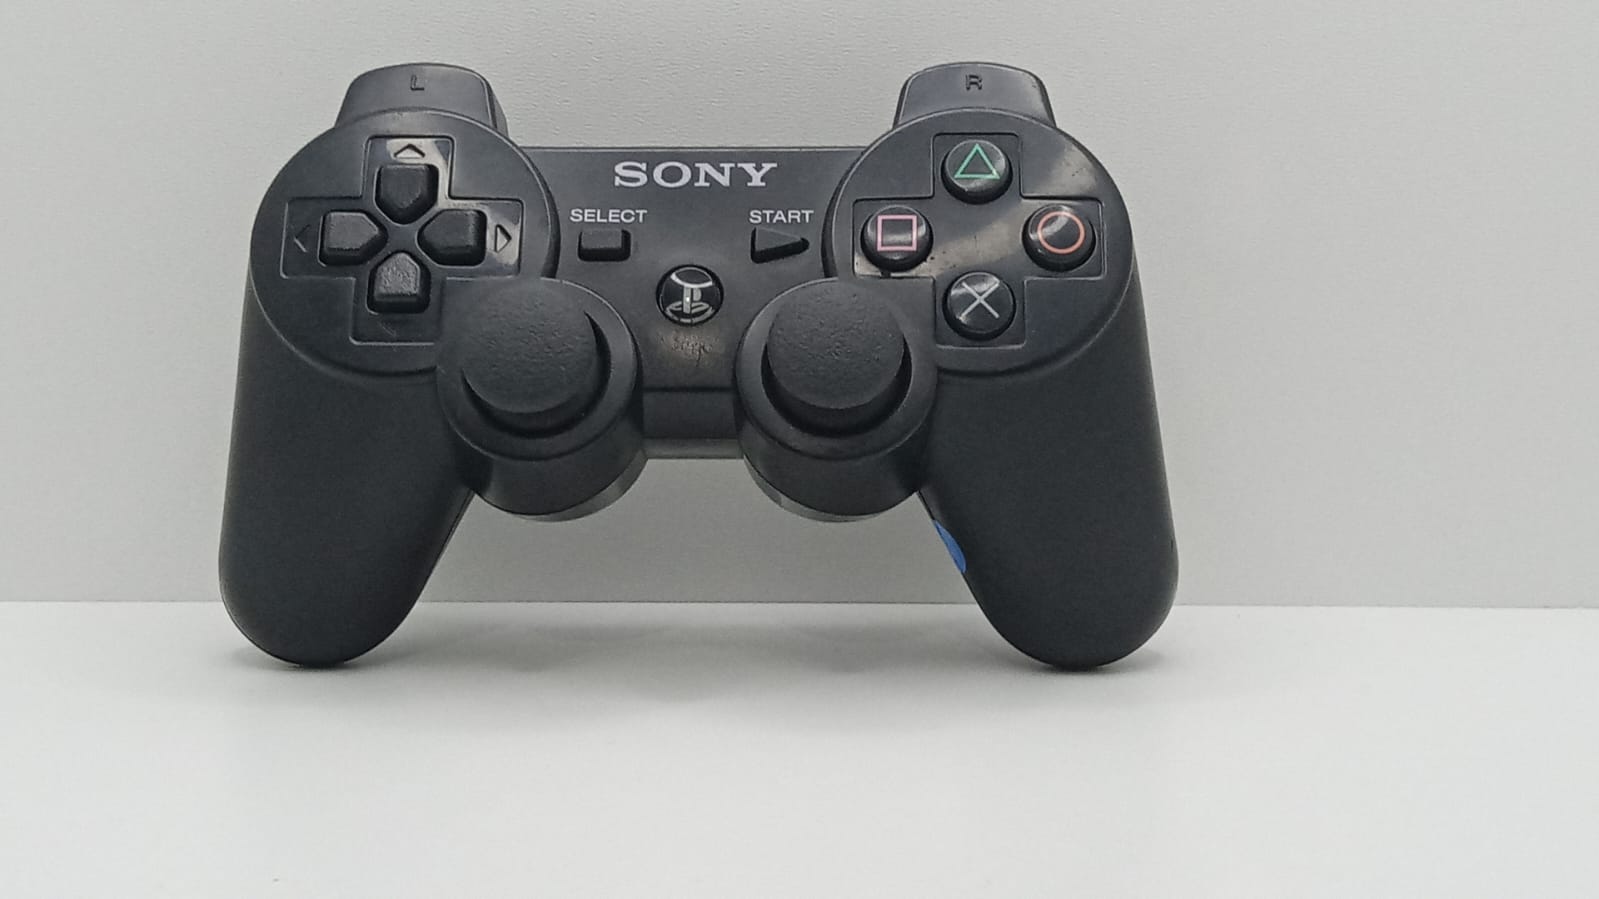 ovladač bezdrátový Dualshock 3 PlayStation 3 PS3 - Černá - SONY® - vyčištěno a zrenovováno